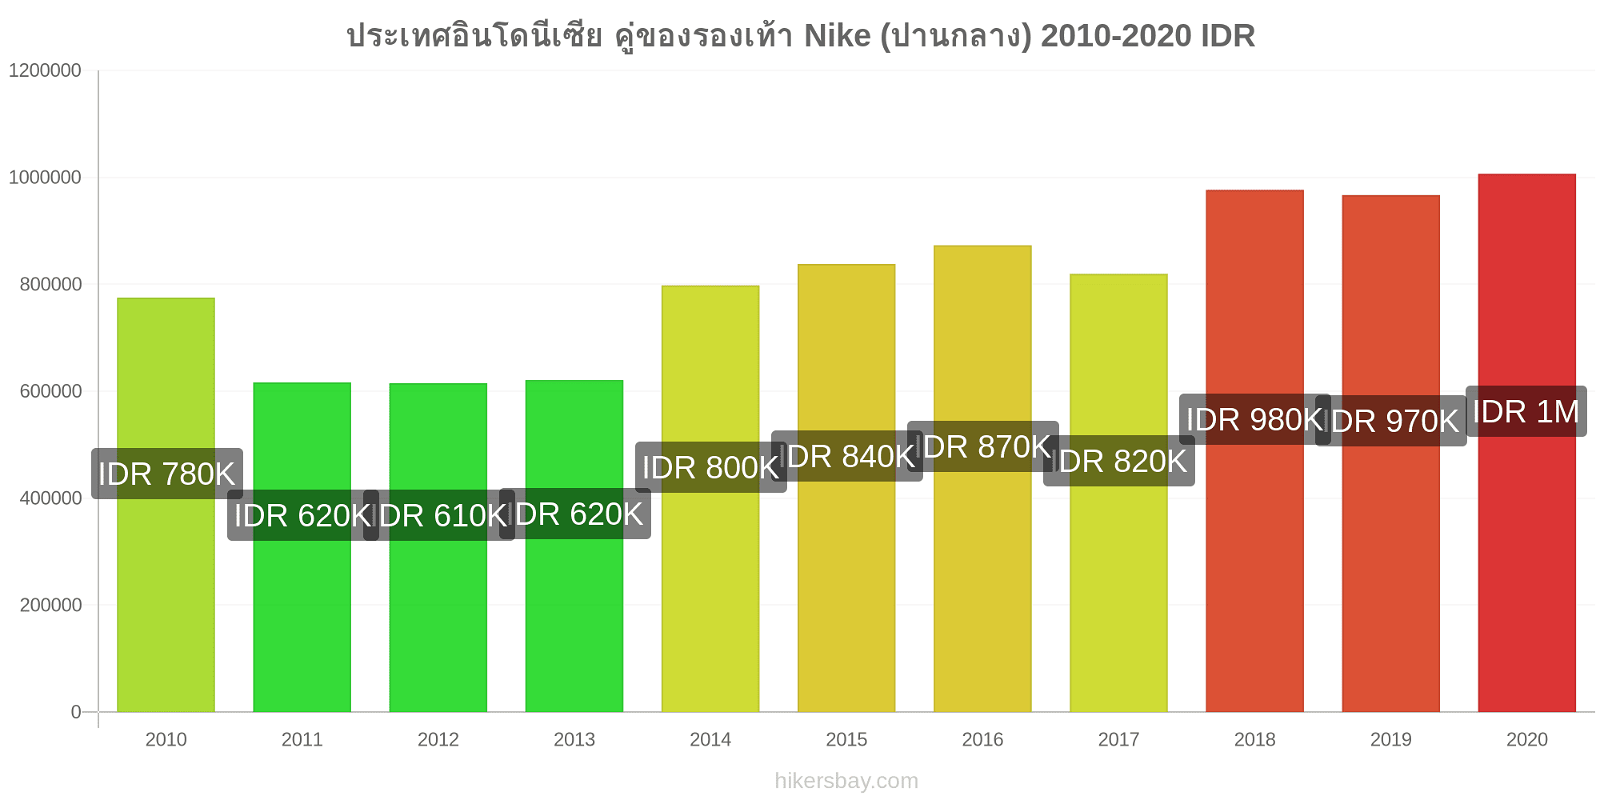 ประเทศอินโดนีเซีย การเปลี่ยนแปลงราคา คู่ของรองเท้า Nike (ปานกลาง) hikersbay.com